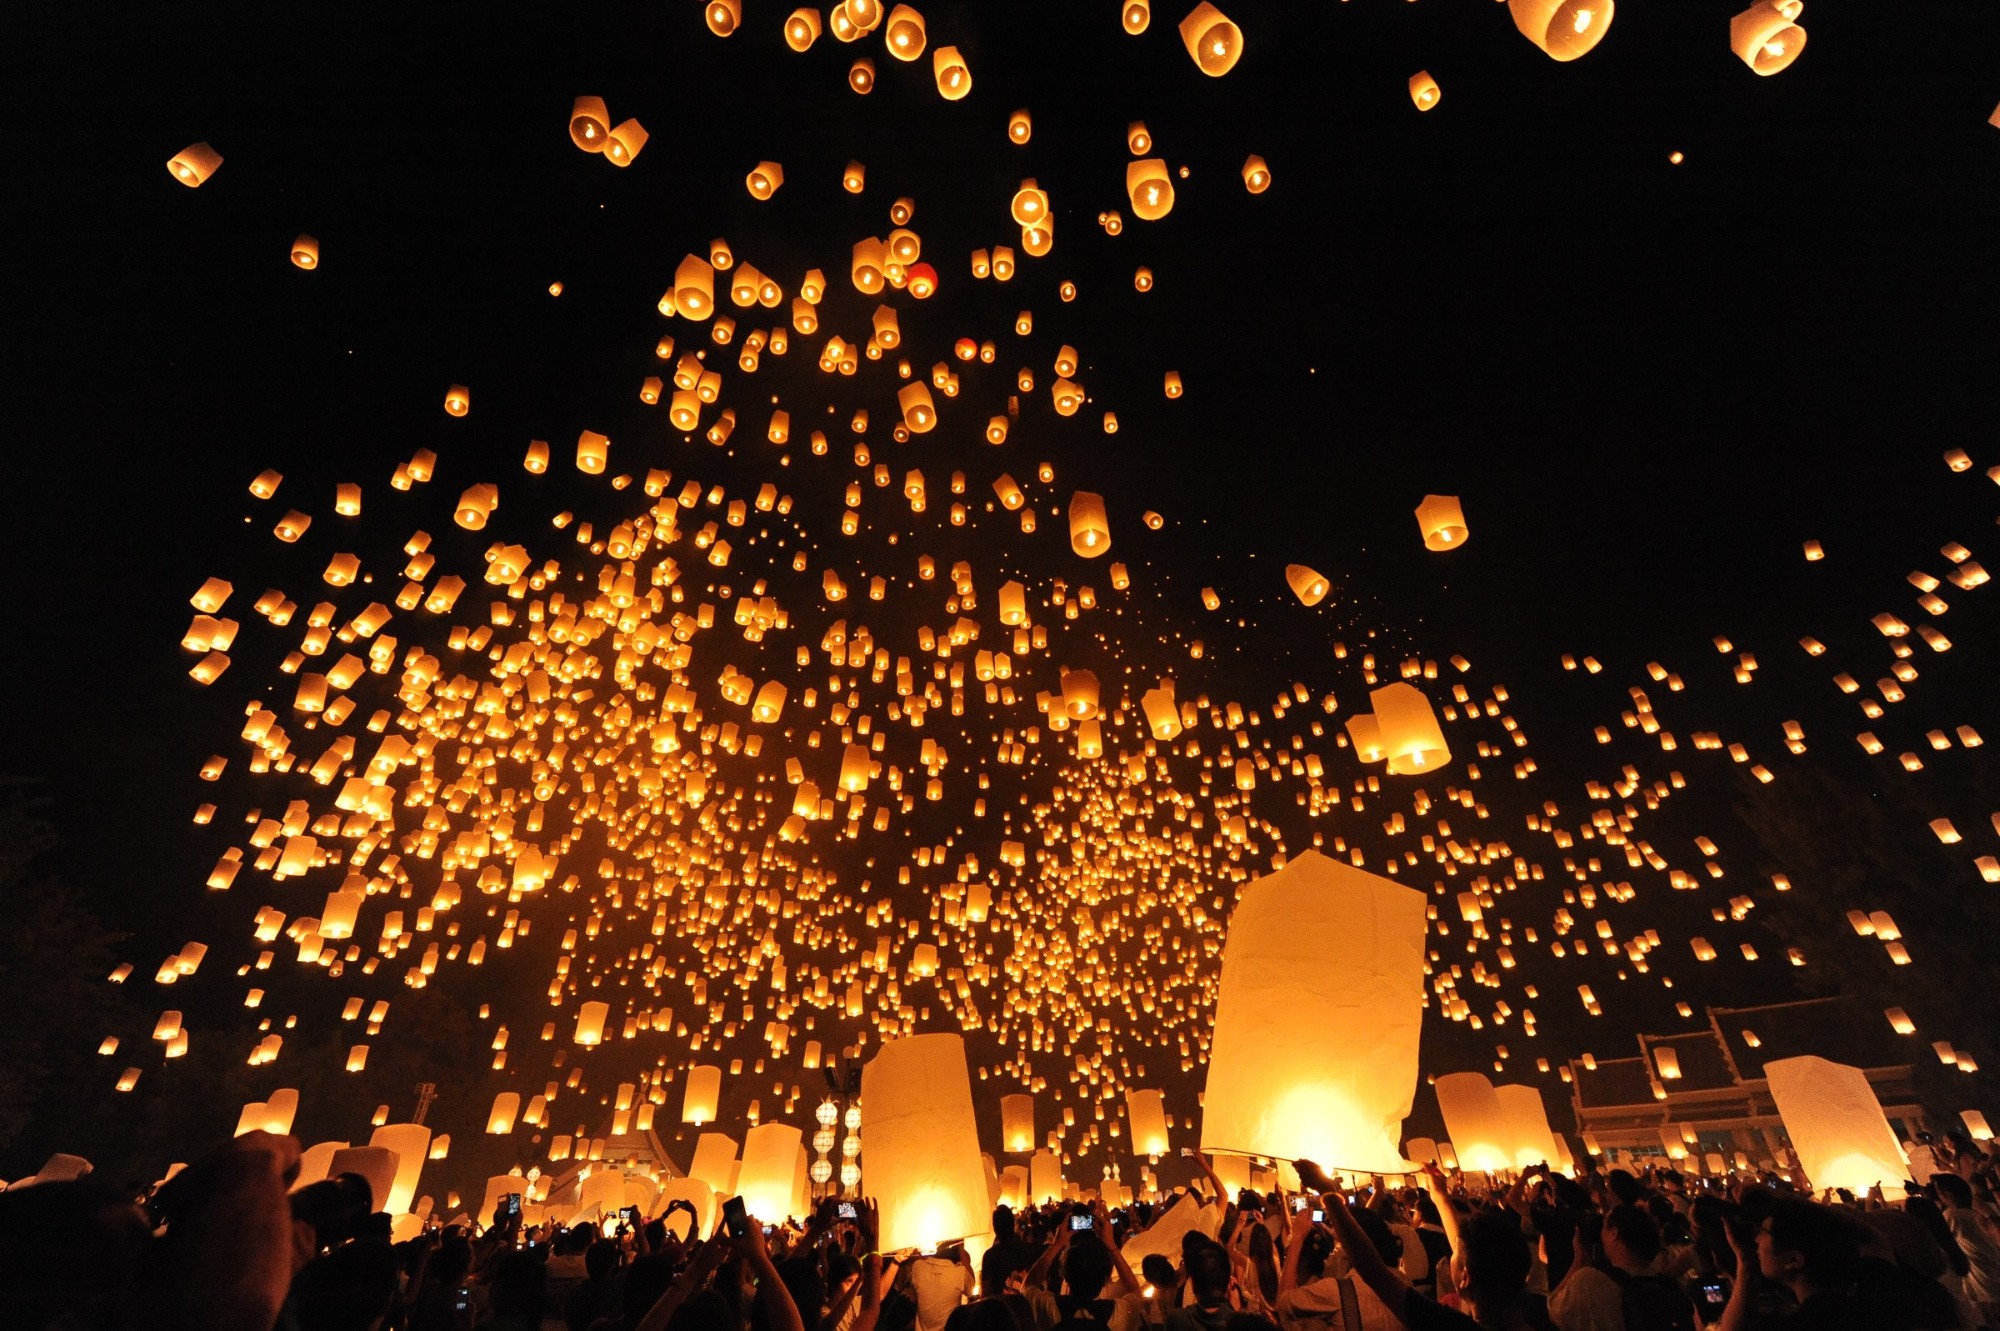 Lễ hội thả đèn Yi Peng mang đến “đại tiệc ánh sáng” khiến bất cứ ai cũng phải vỡ òa vì mãn nhãn